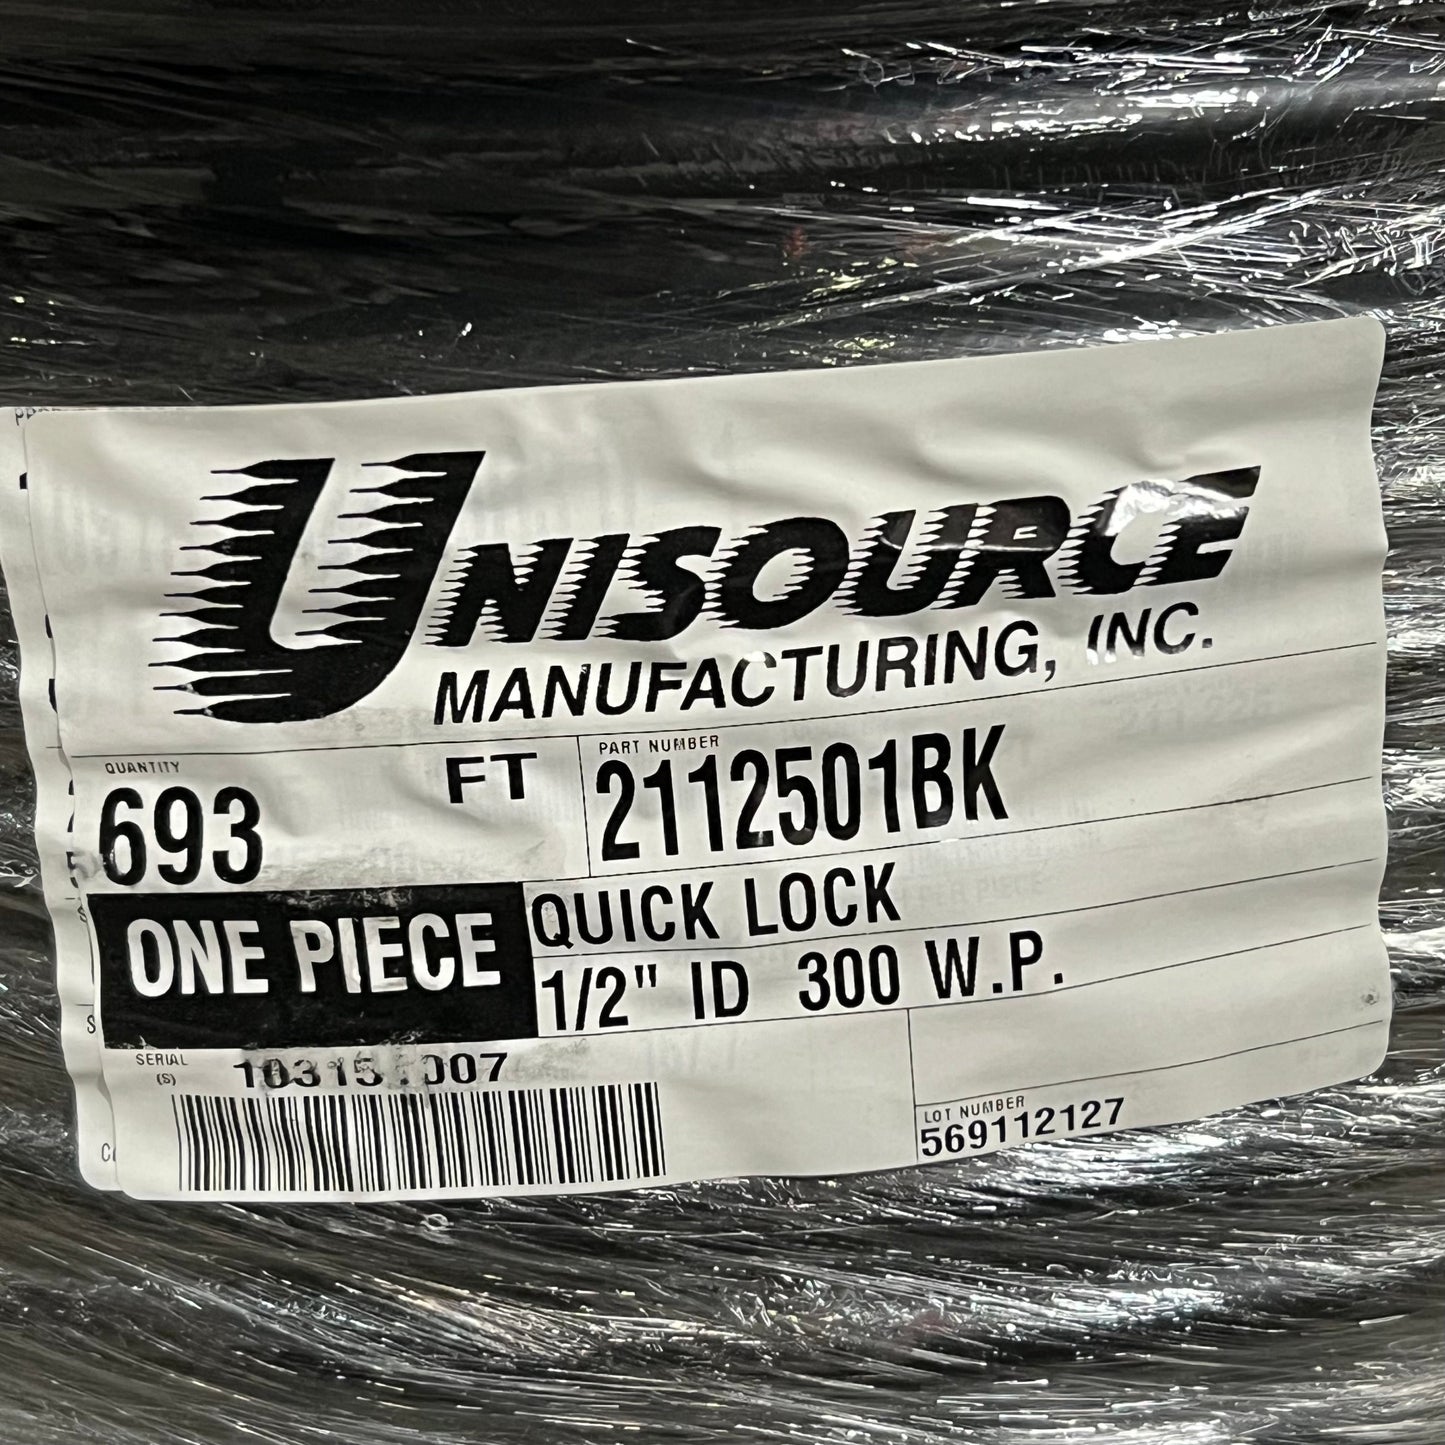 UNISOURCE Quick Lock  Rubber Hose 1/2" 300 W.P. Black 693 ft. 2112501BK